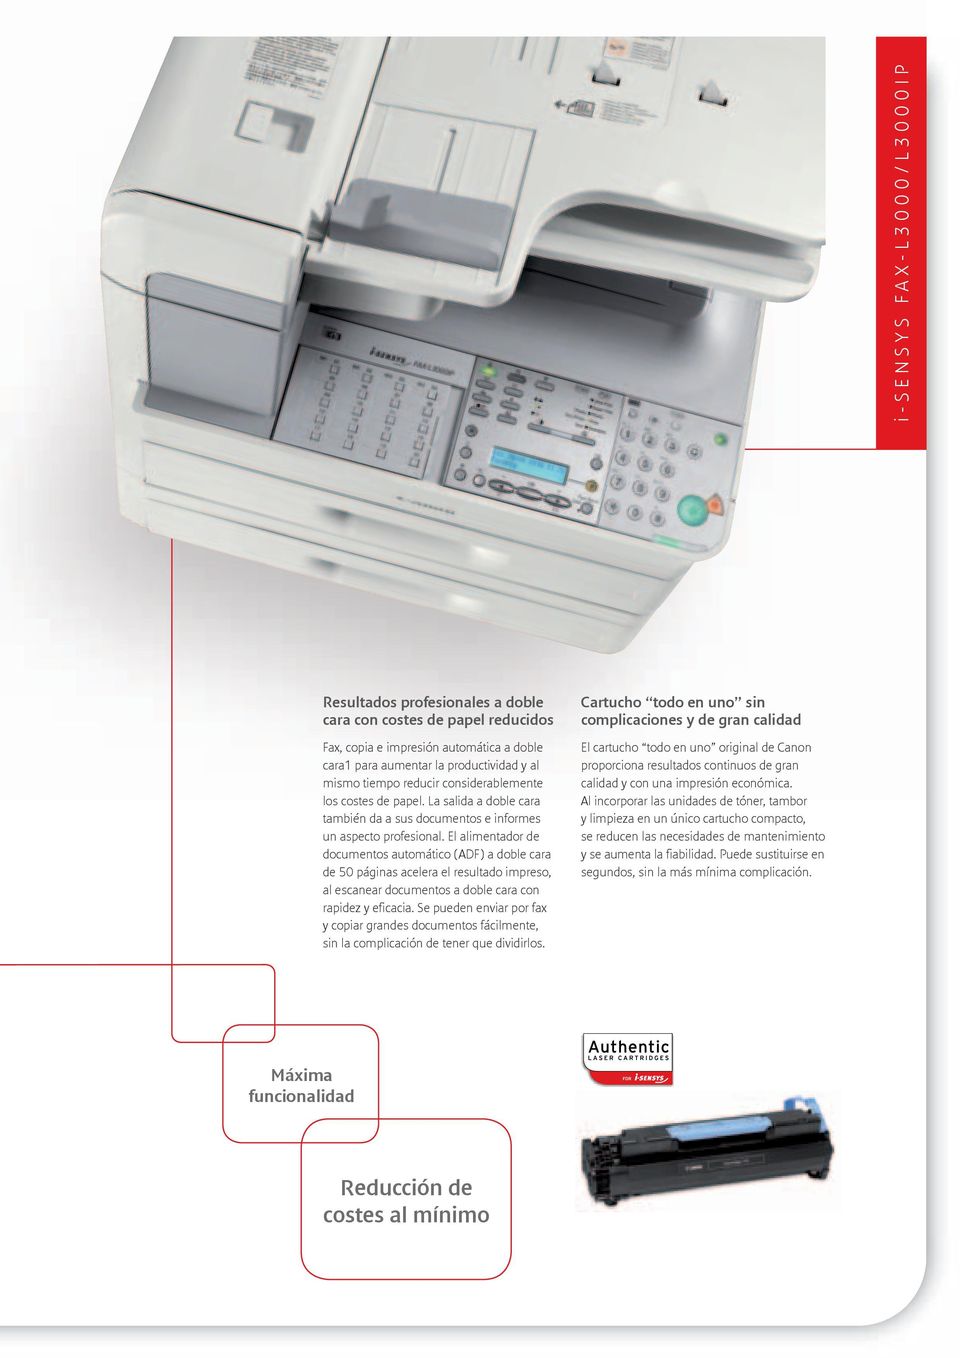 El alimentador de documentos automático (ADF) a doble cara de 50 páginas acelera el resultado impreso, al escanear documentos a doble cara con rapidez y eficacia.